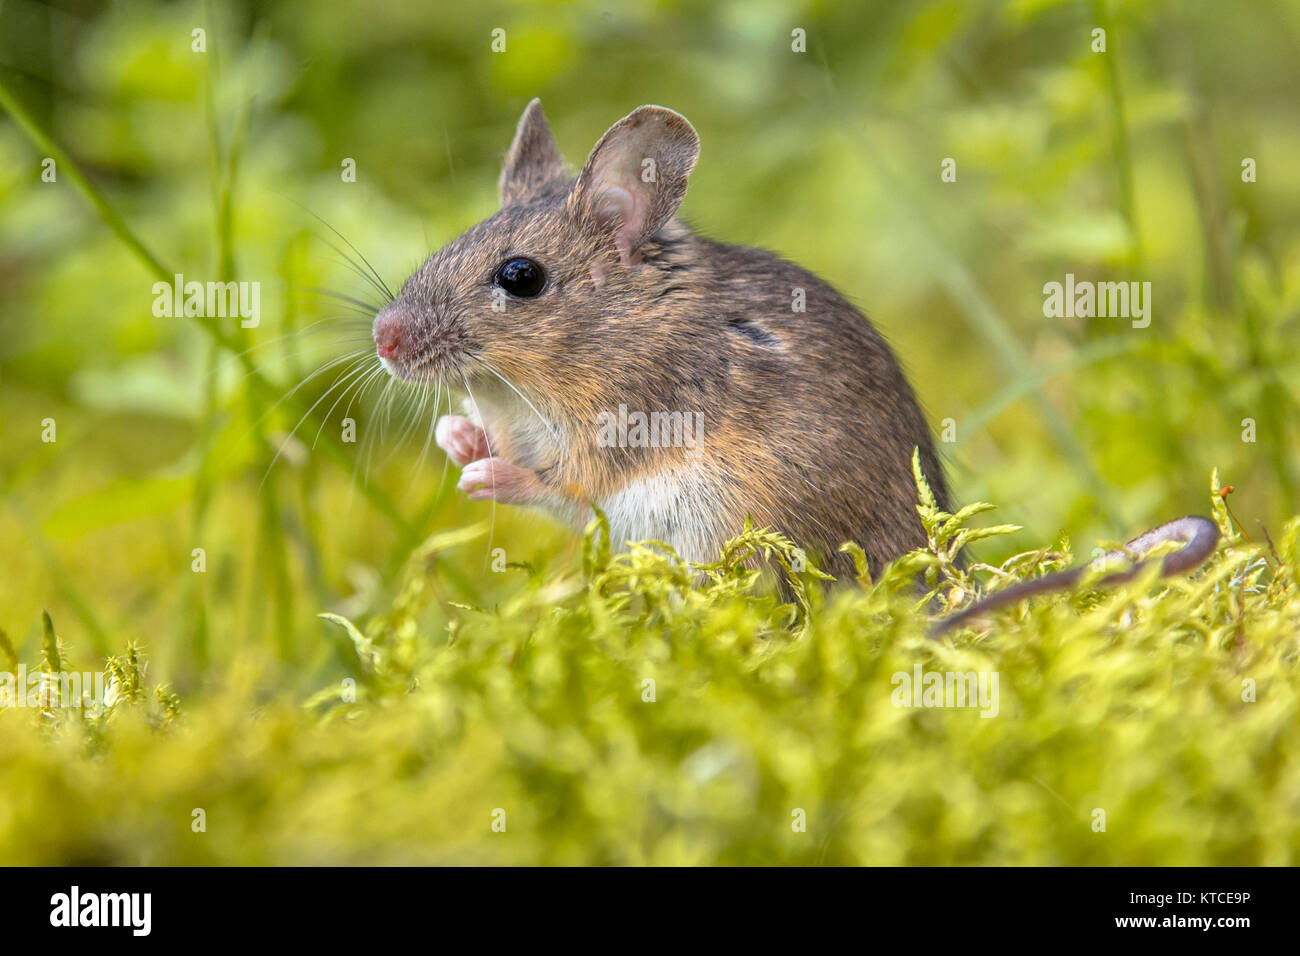 Lindo madera wild mouse (Apodemus sylvaticus) en musgo verde entorno natural y mirando a la cámara Foto de stock